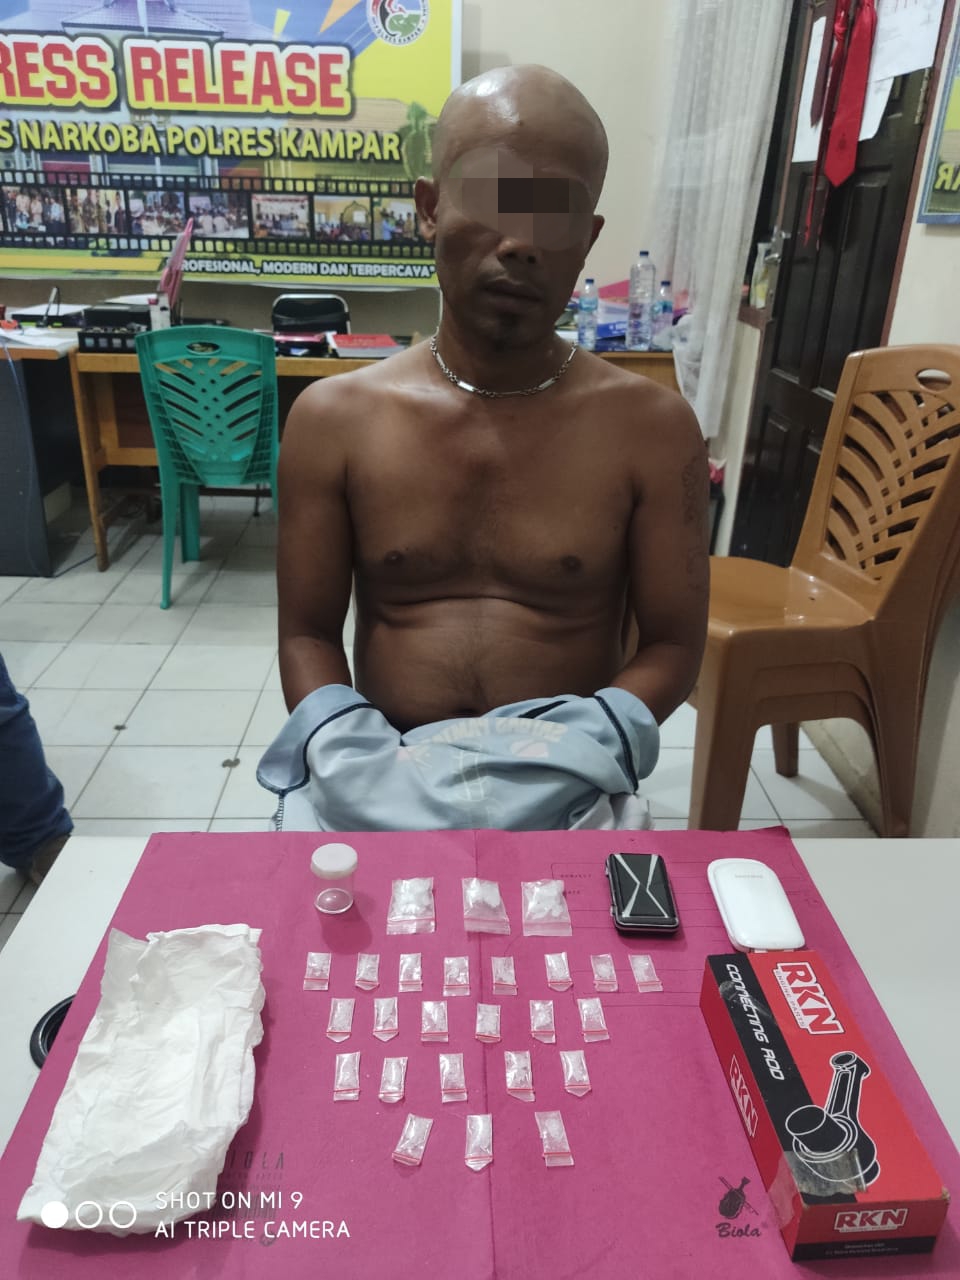 26 Paket Sabu Ditemukan Petugas dari Seorang Pengedar di Wilayah Desa Tanjung Bungo Kampa